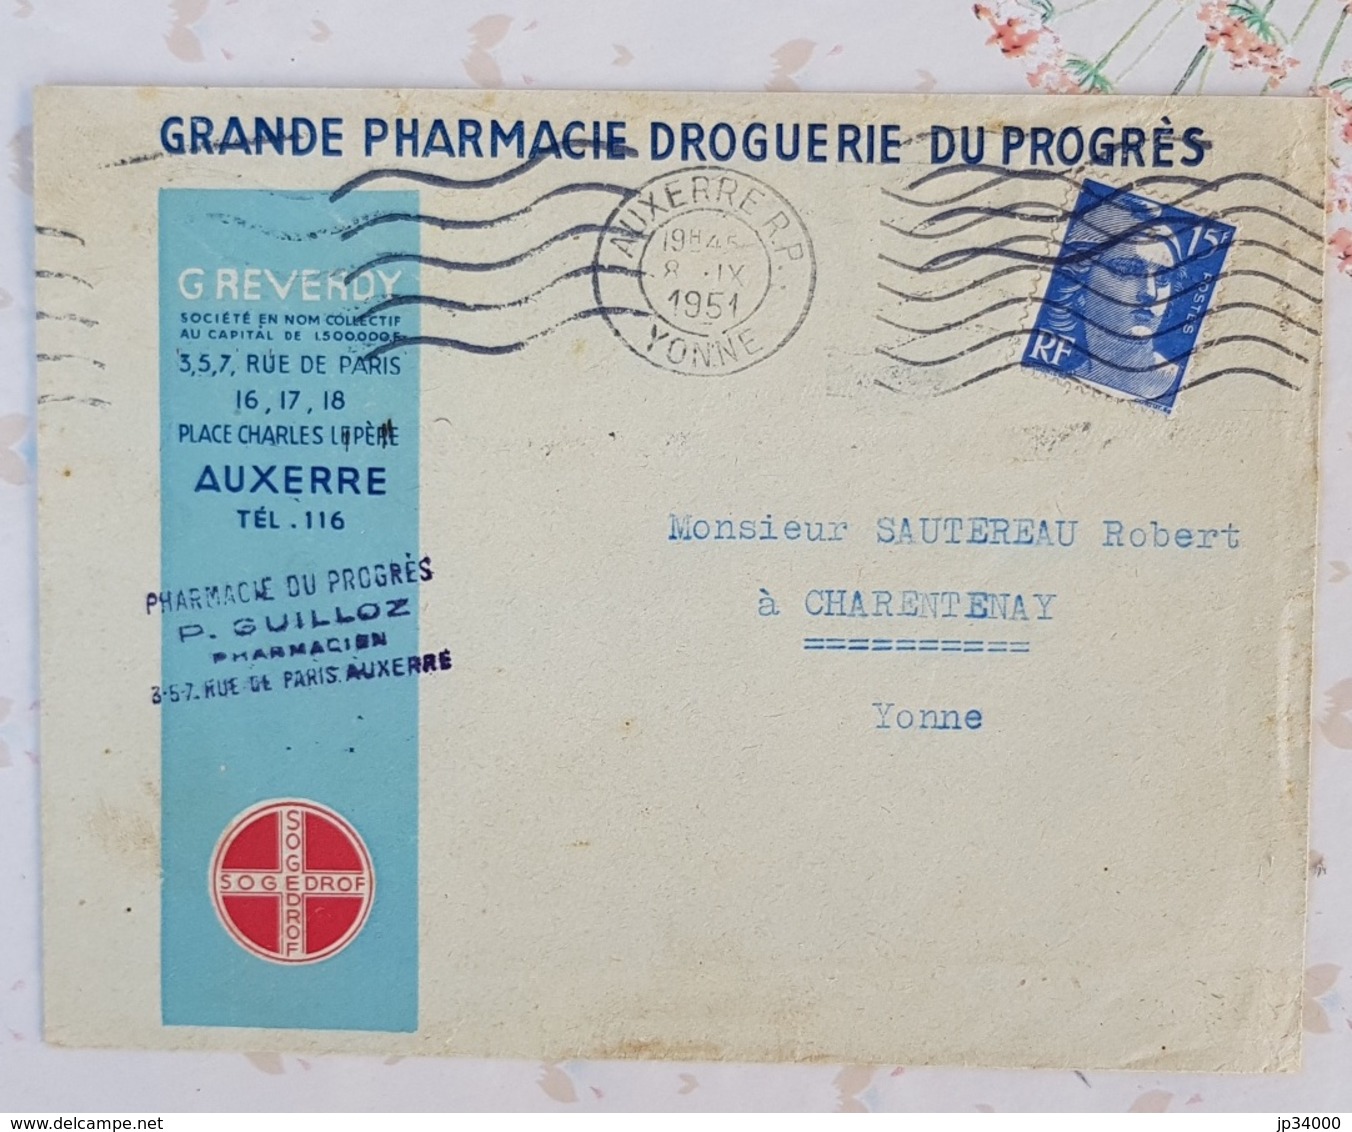 FRANCE Phamarcie, Medecine, Lettre A Entete Publicitaire GRANDE PHARMACIE DU PROGRES à AUXERRE 1951 - Farmacia